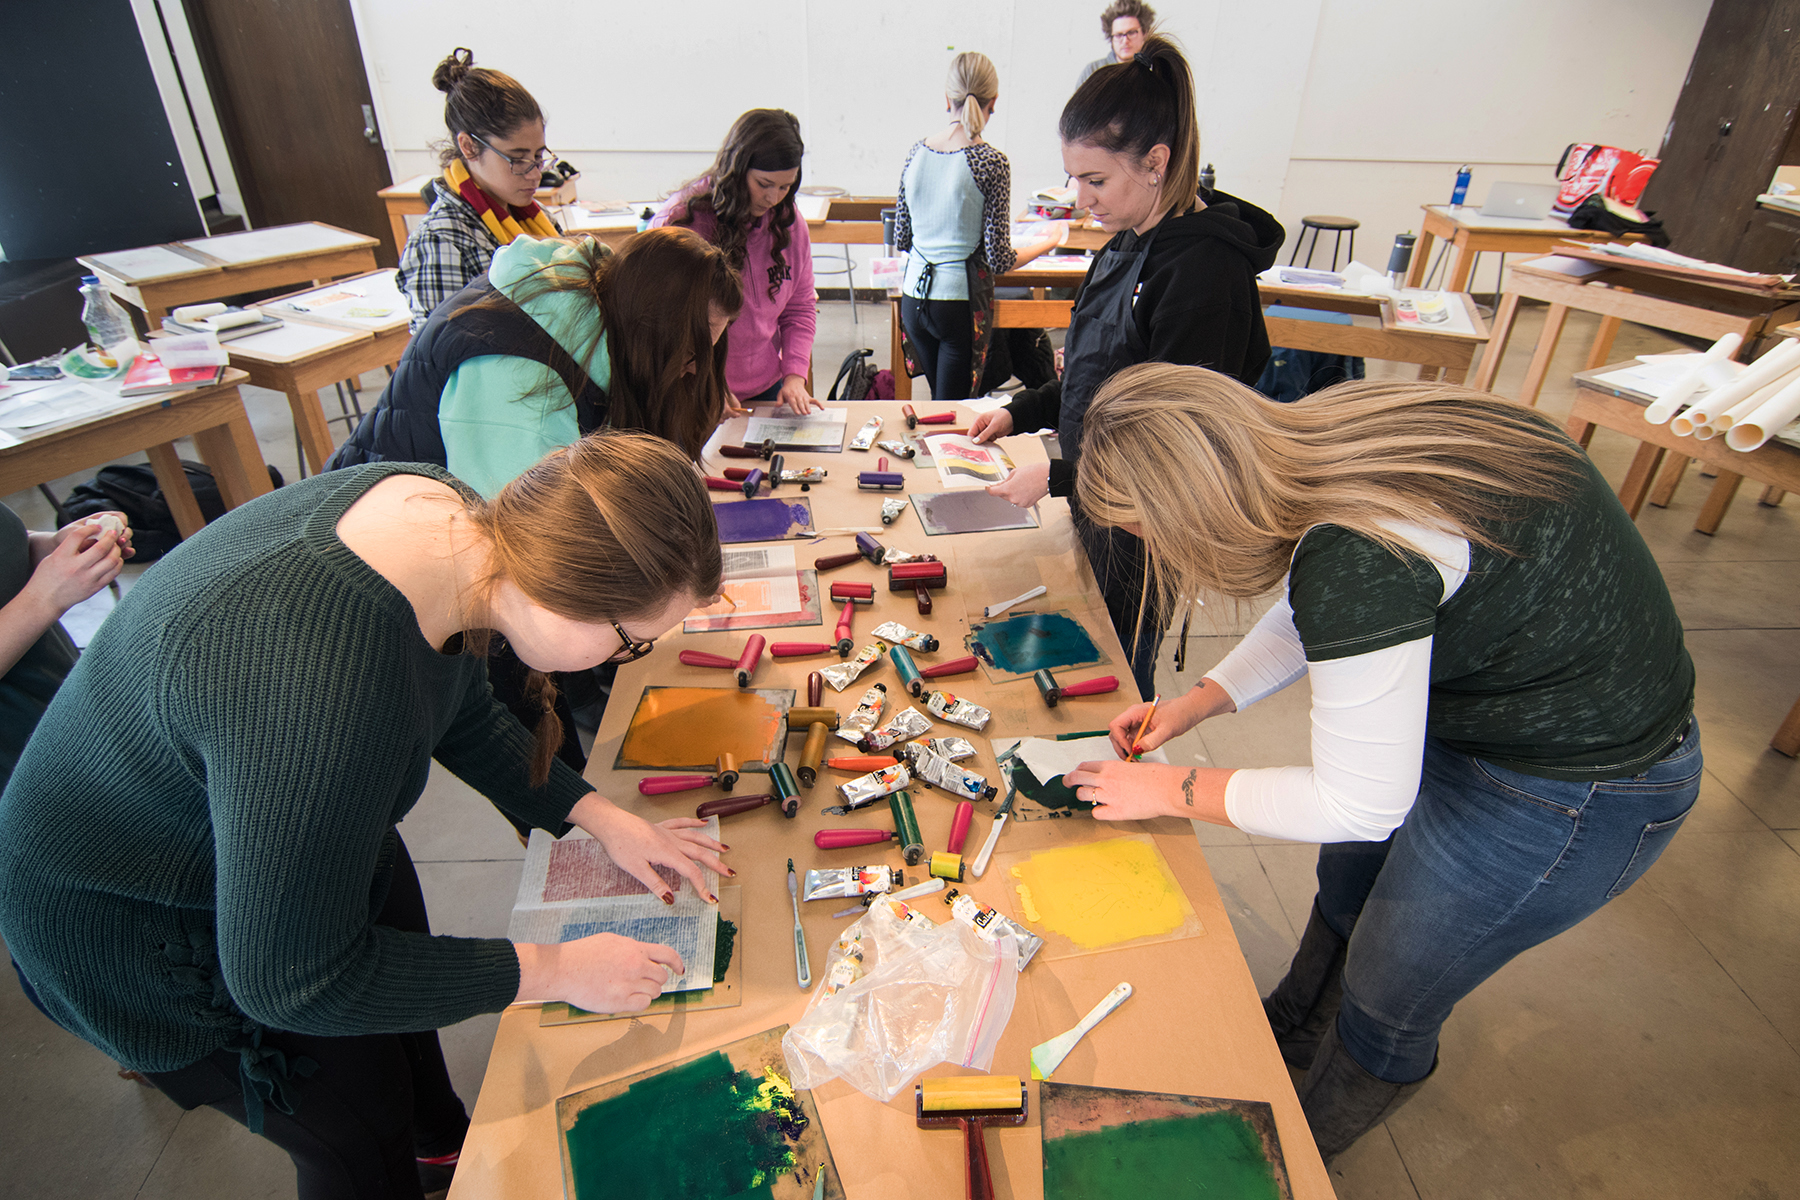 Printmaking Workshop in Art Teaching, 2019